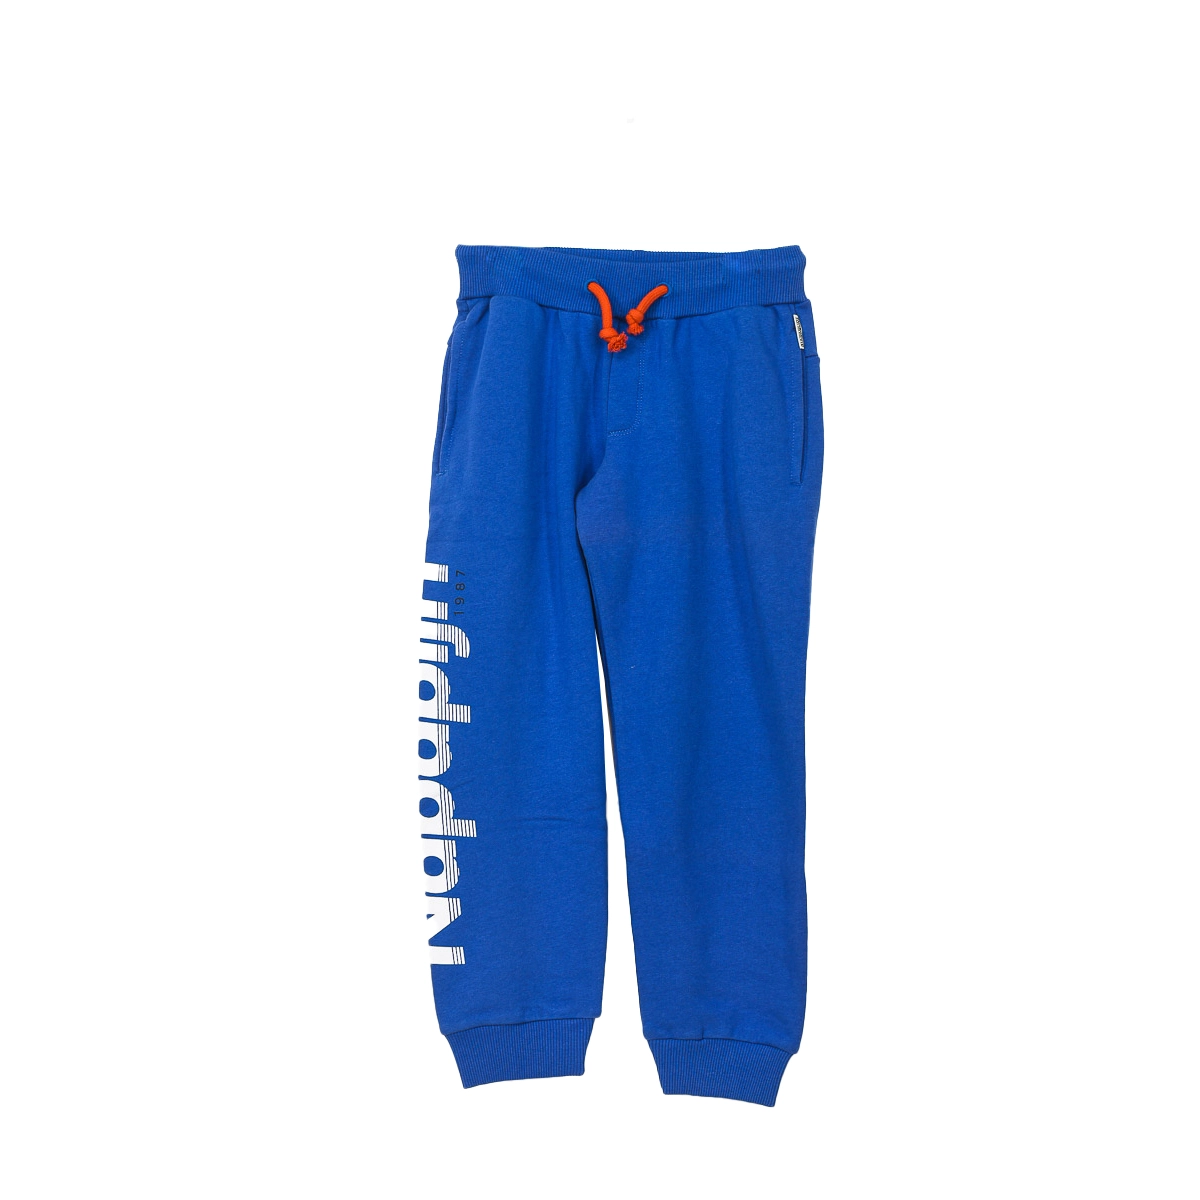 Pantalón deportivo largo Napapijri GA4EQA niño Talla: 8 AÑOS Color: Azul GA4EQA-BE1.8 AÑOS